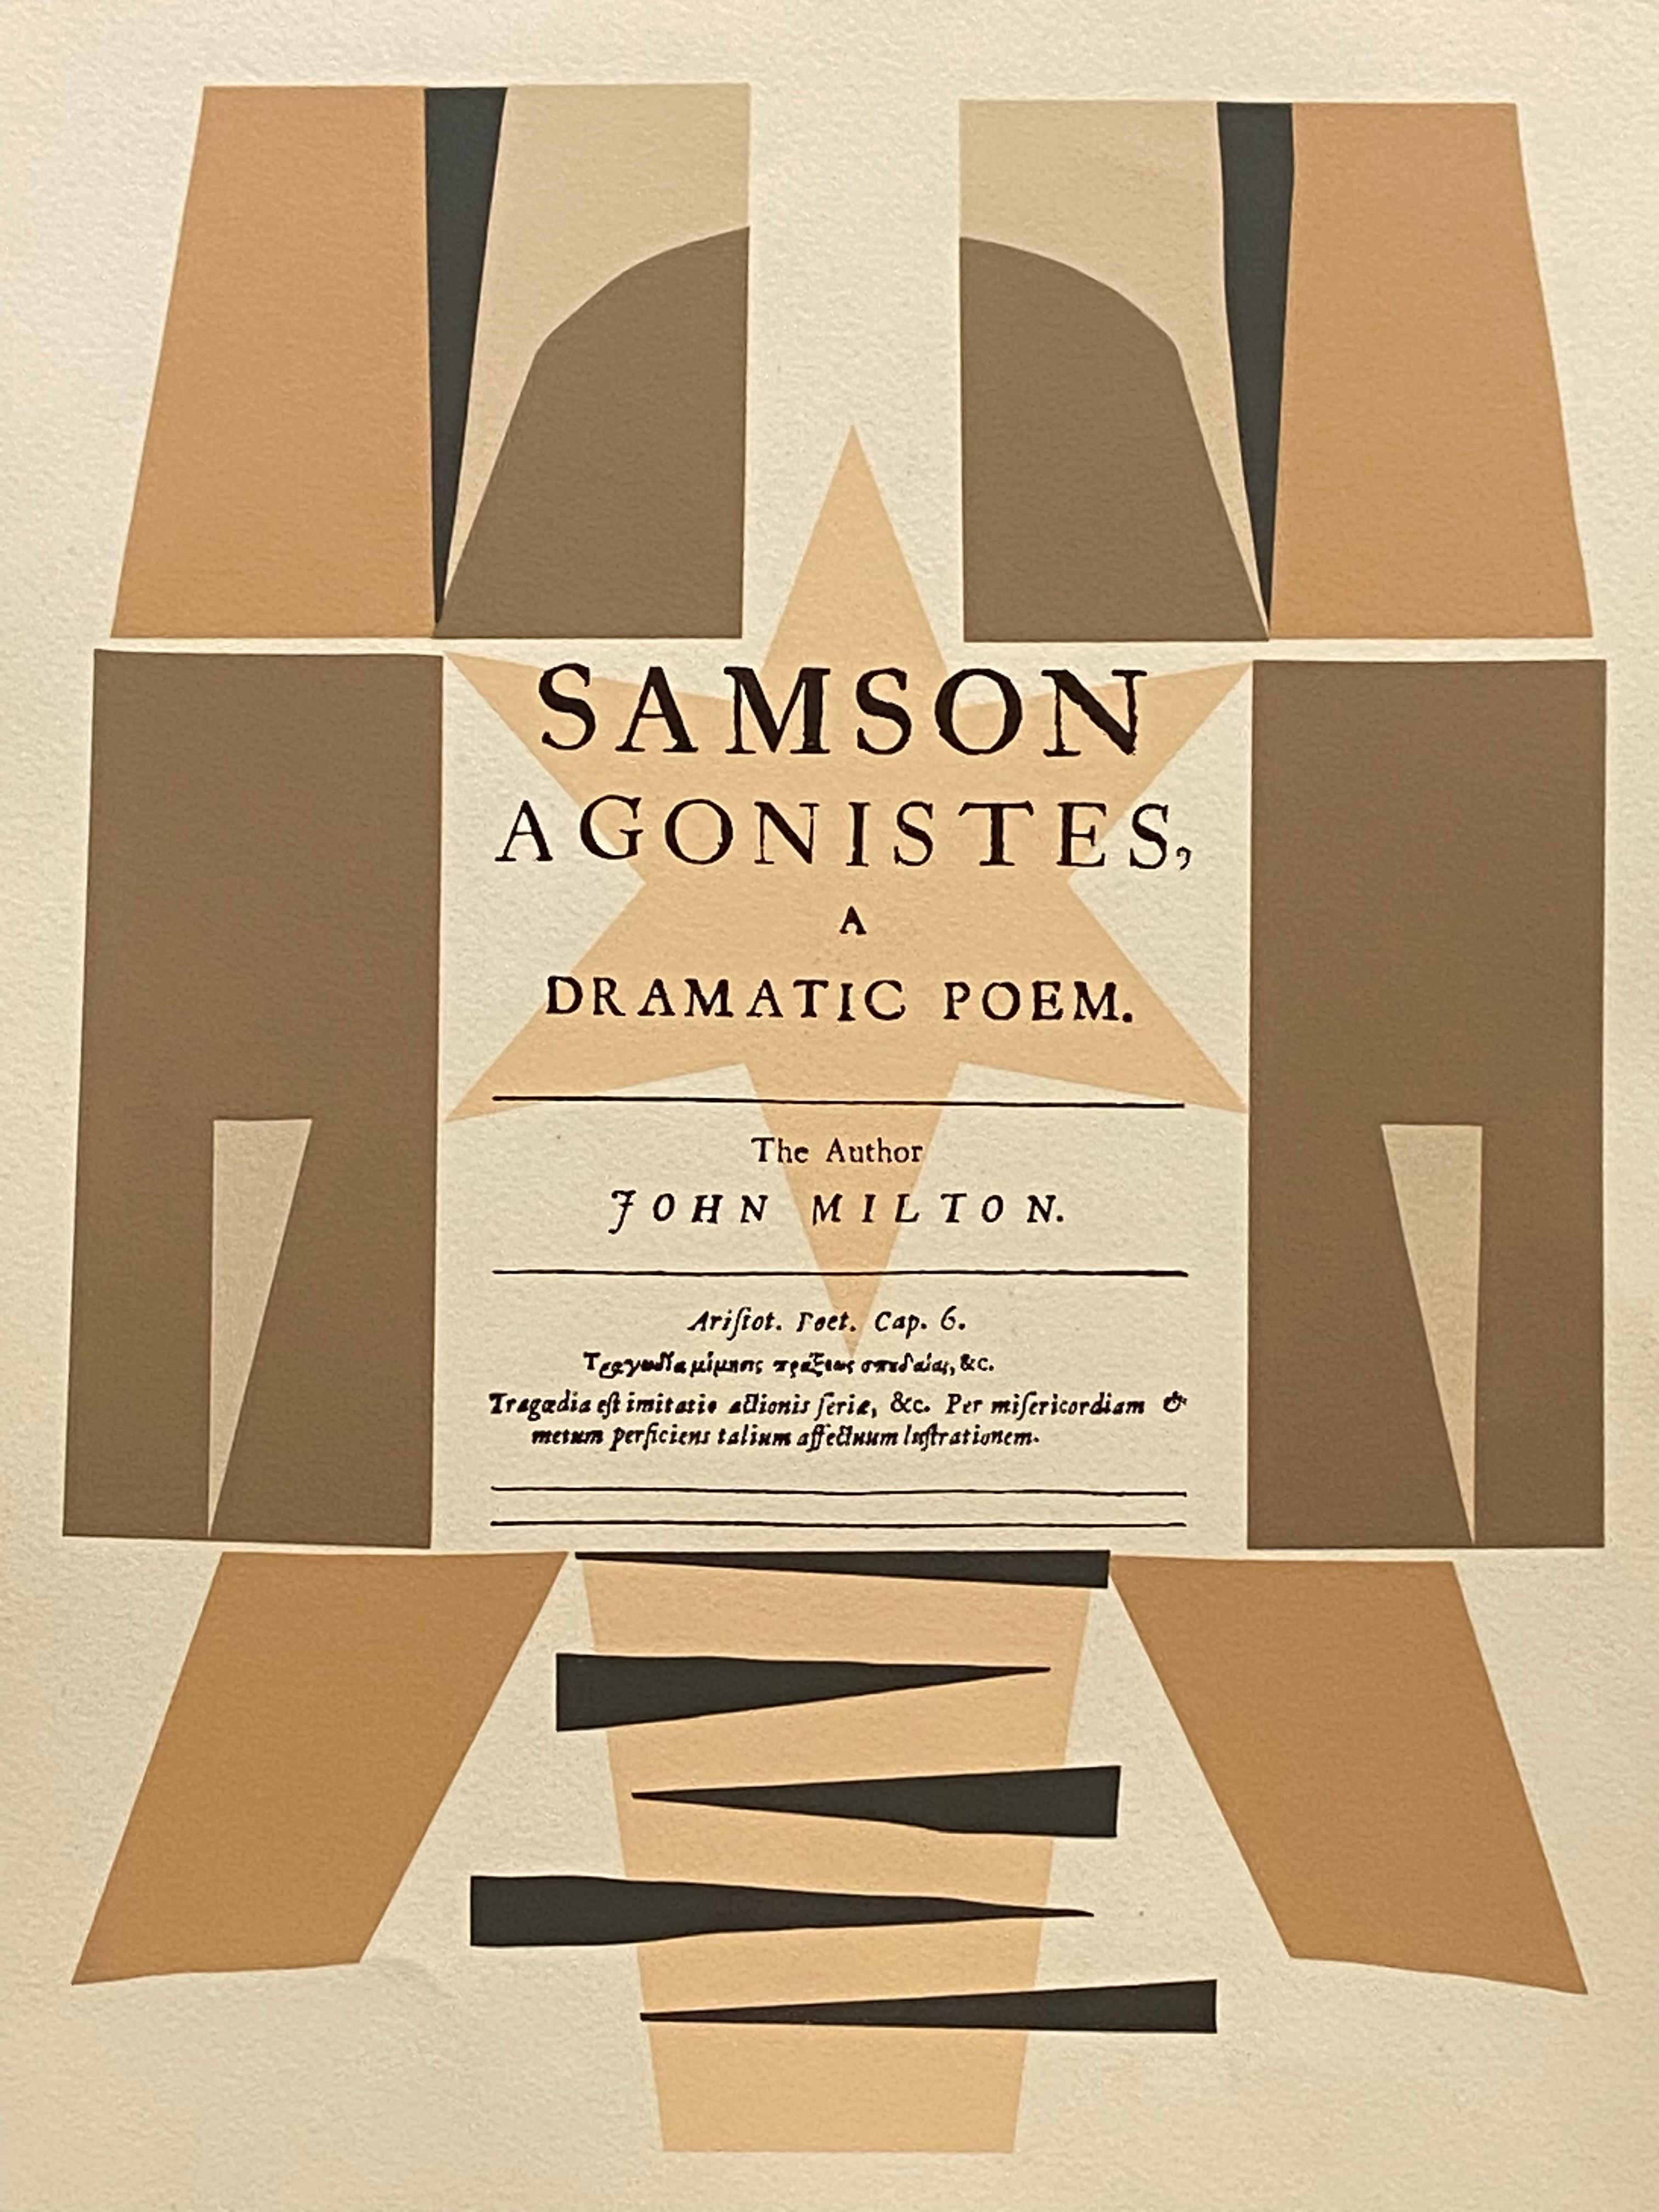 Page de titre : Samson Agonistes, un pome dramatique. L'auteur, John Milton - Print de Robert Medley